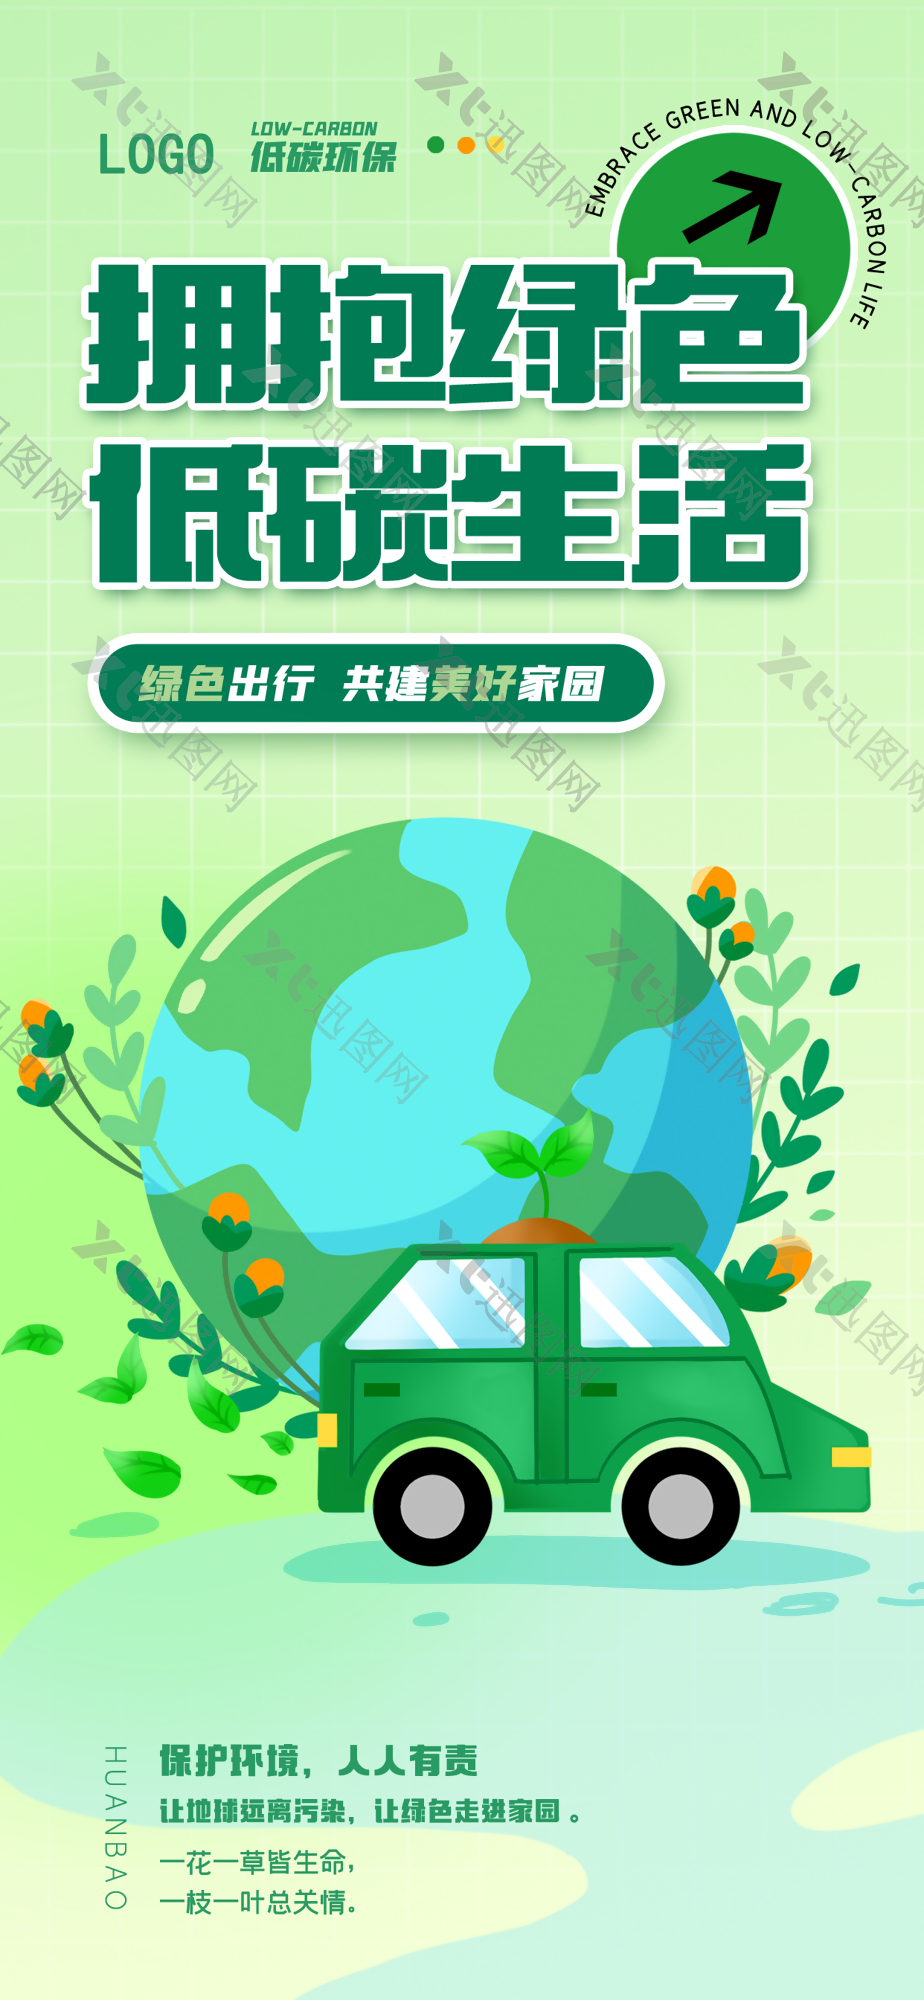 拥抱绿色低碳生活保护环境公益海报图下载